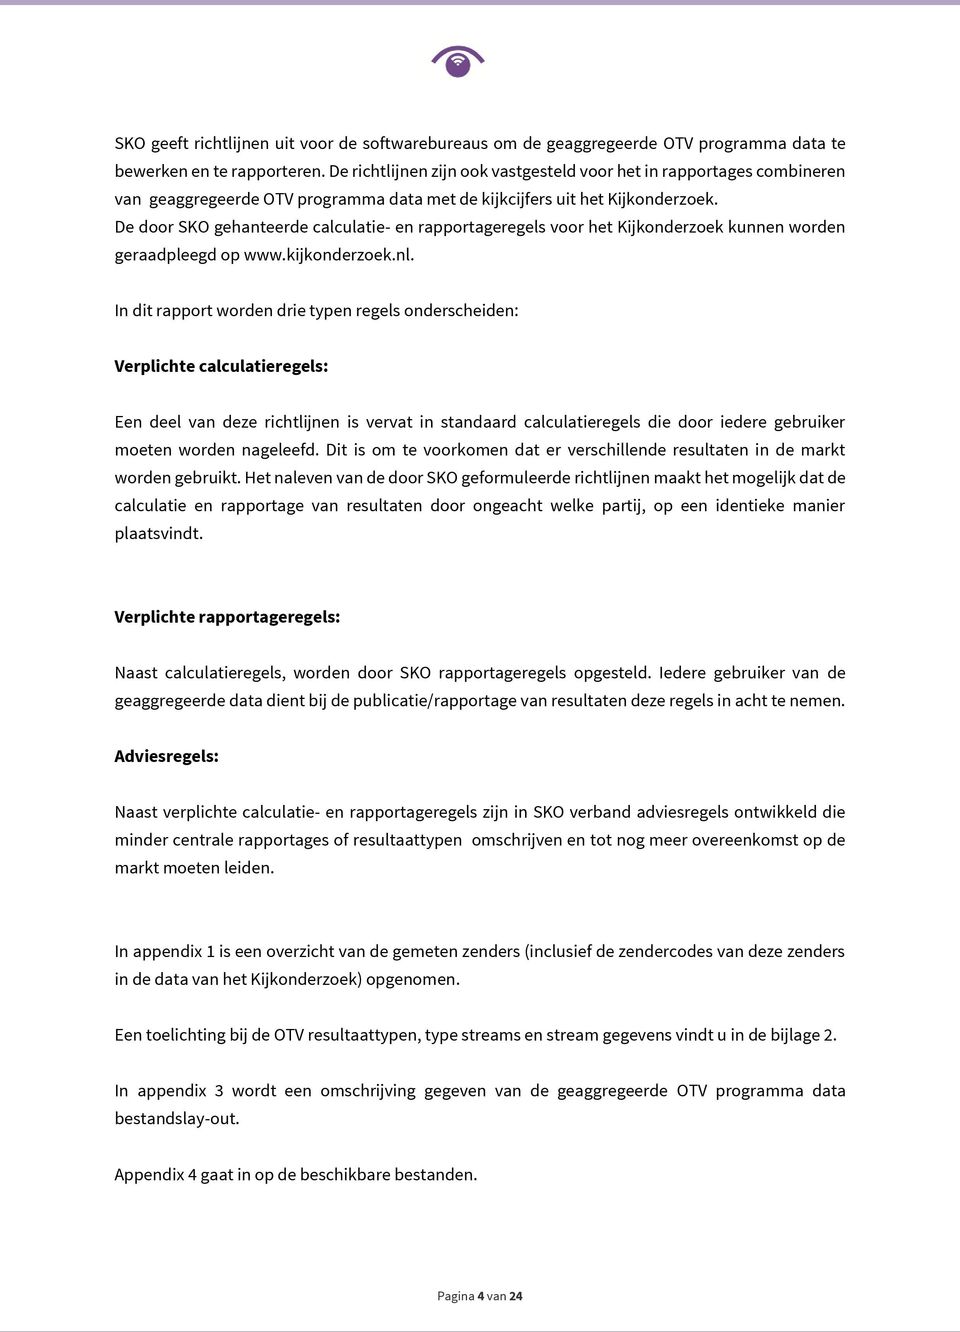 De door SKO gehanteerde calculatie- en rapportageregels voor het Kijkonderzoek kunnen worden geraadpleegd op www.kijkonderzoek.nl.